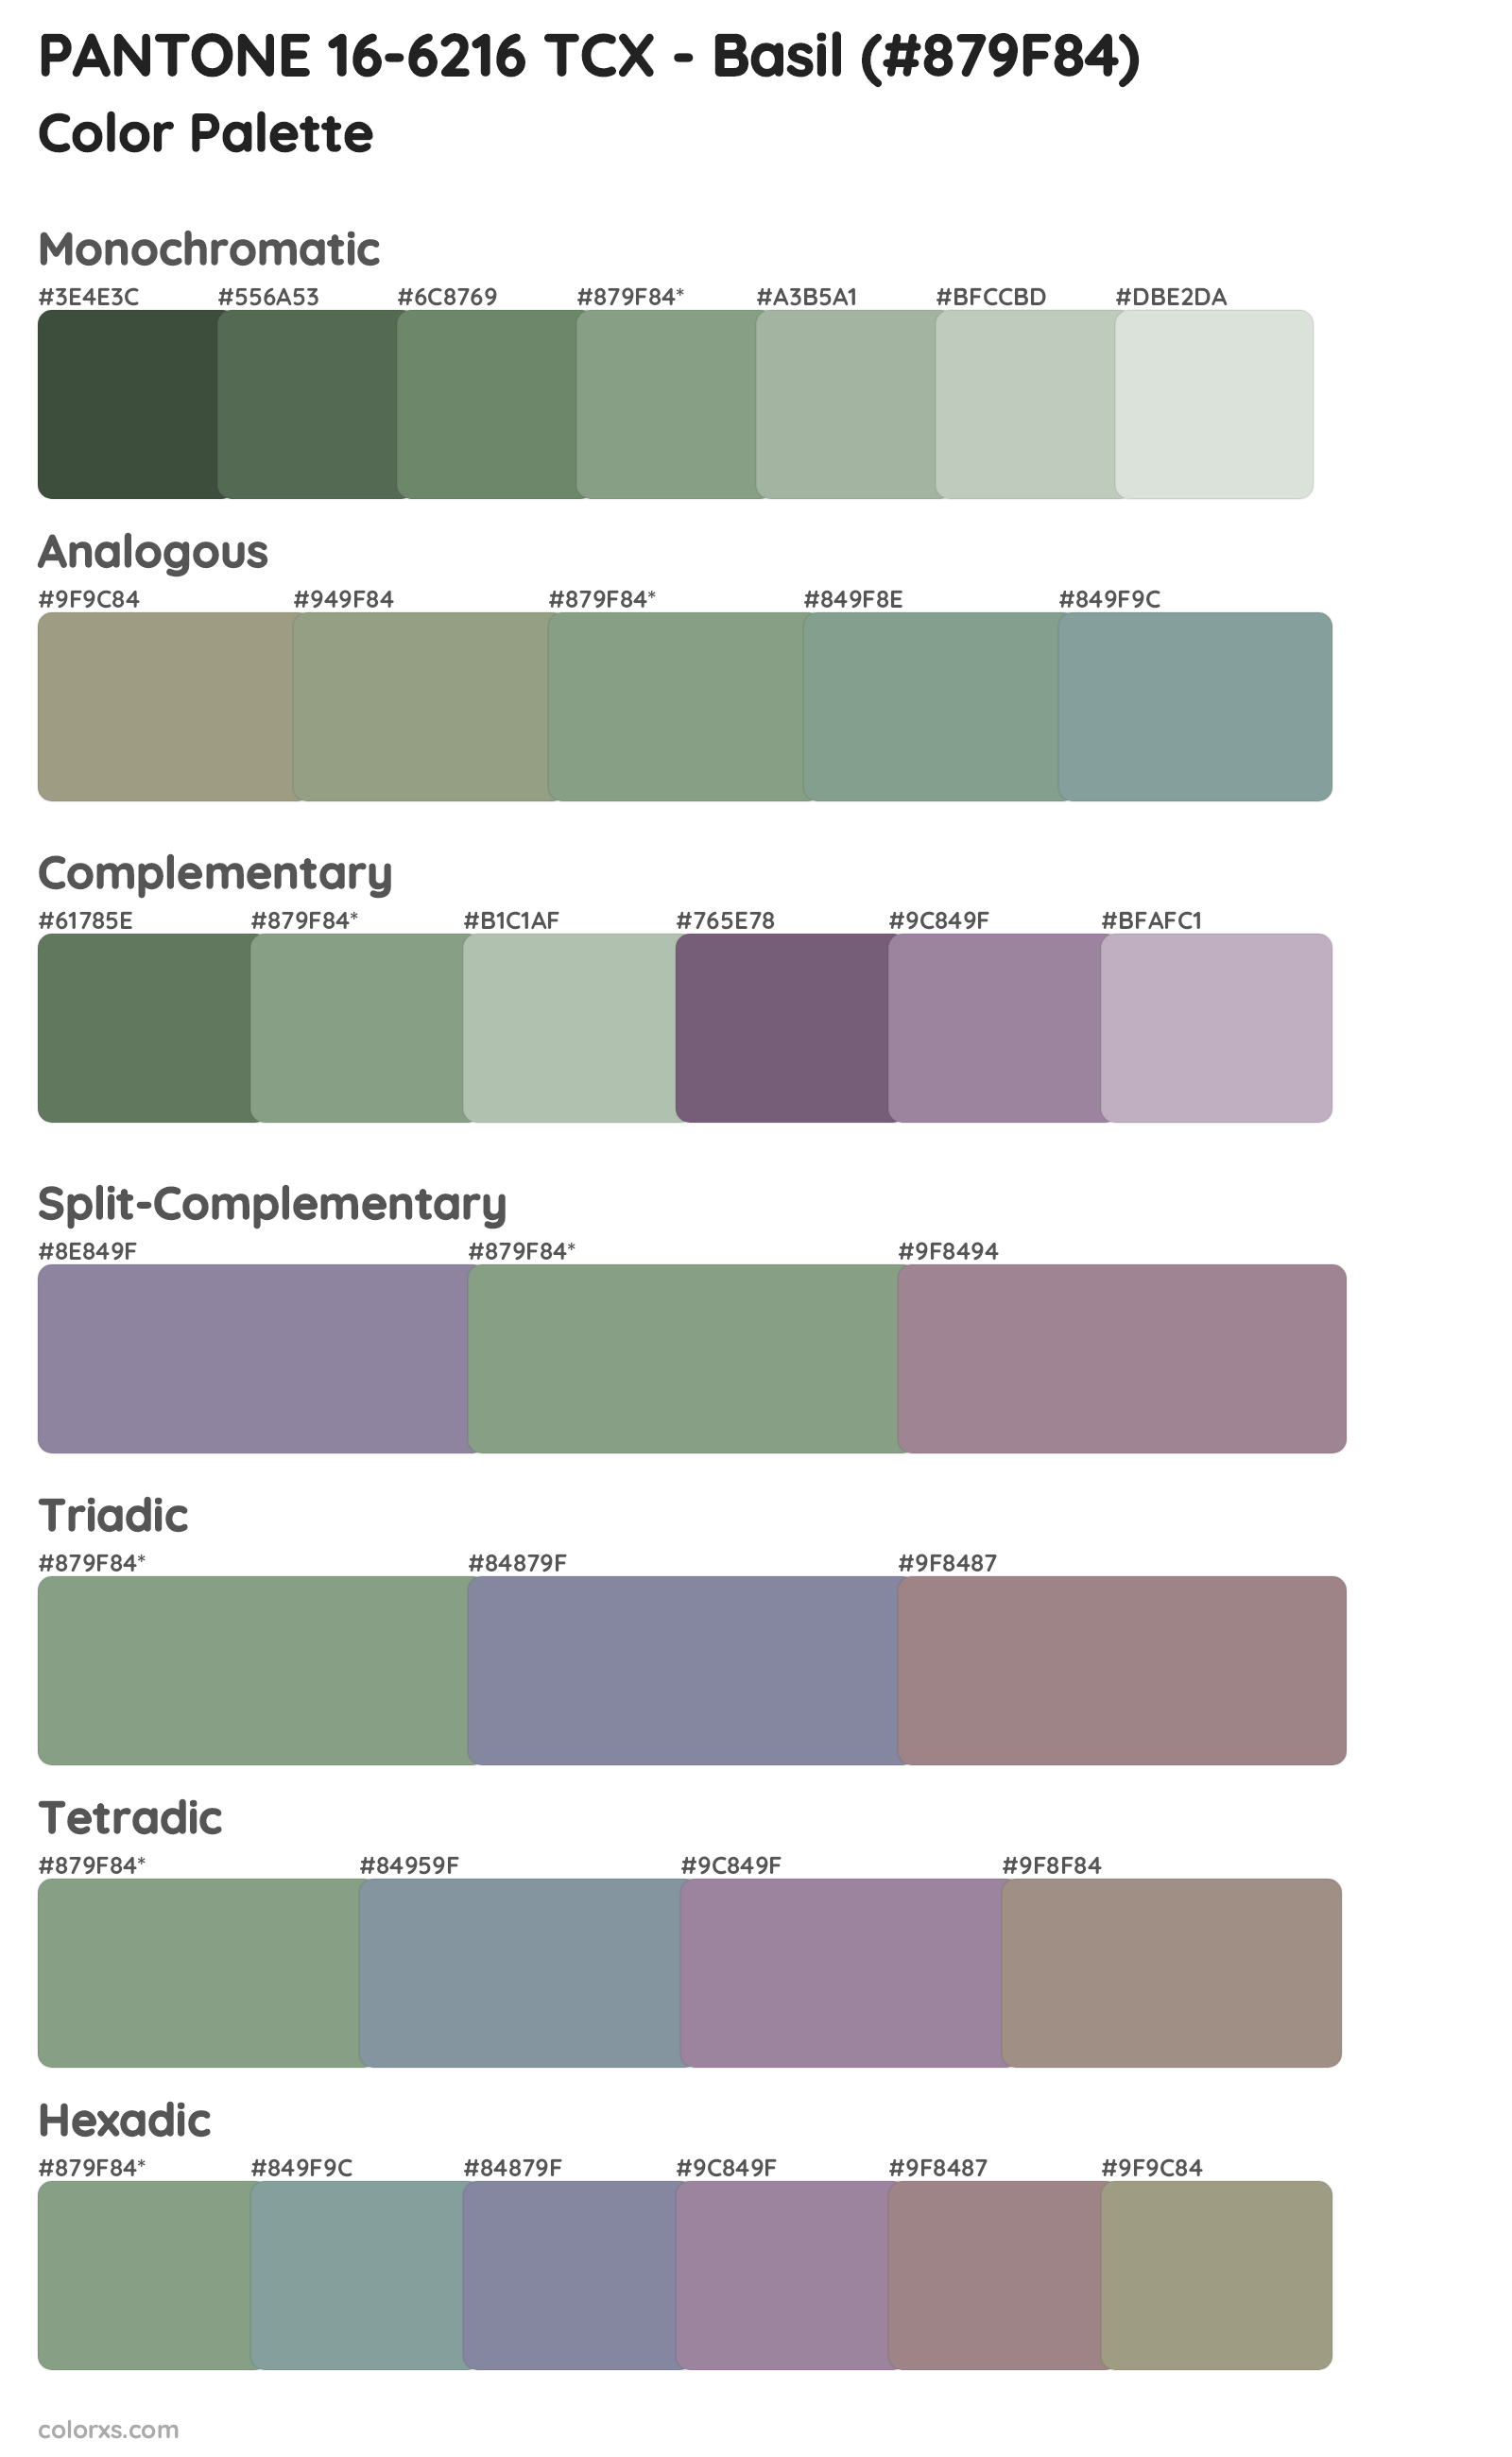 PANTONE 16-6216 TCX - Basil Color Scheme Palettes